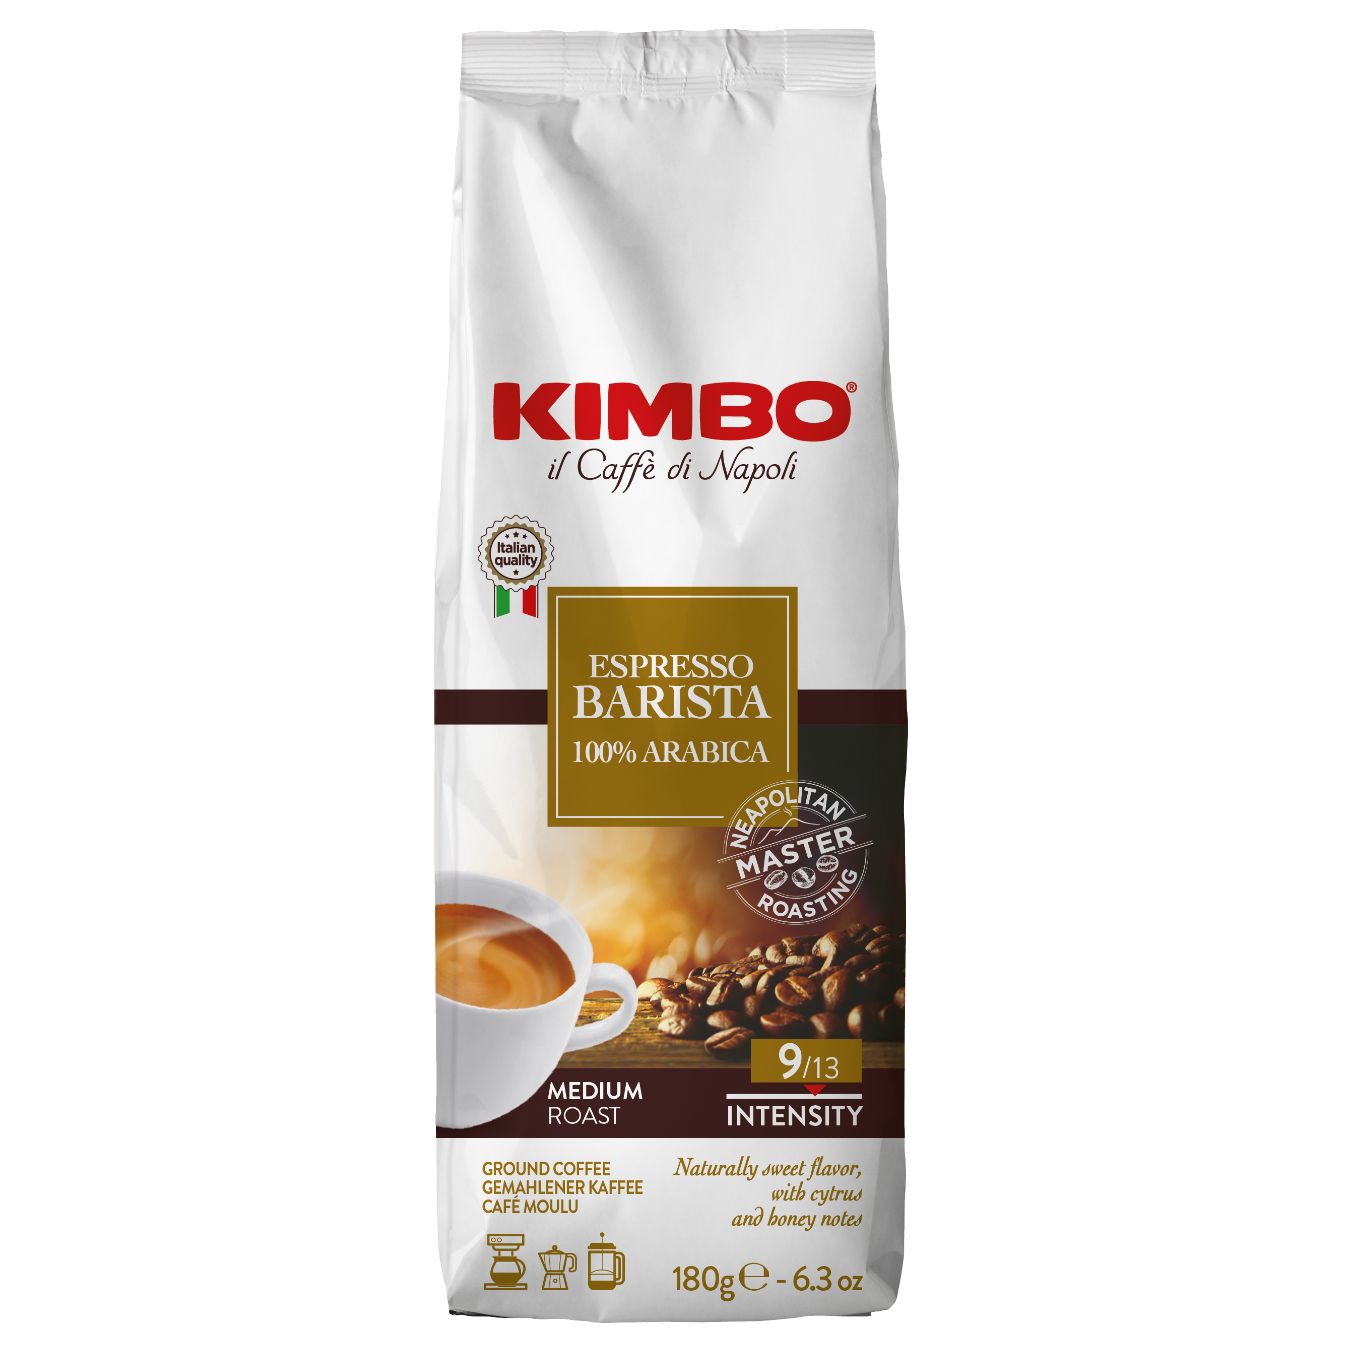 Кимбо, Мляно кафе Еспресо бариста 100% арабика, 180гр